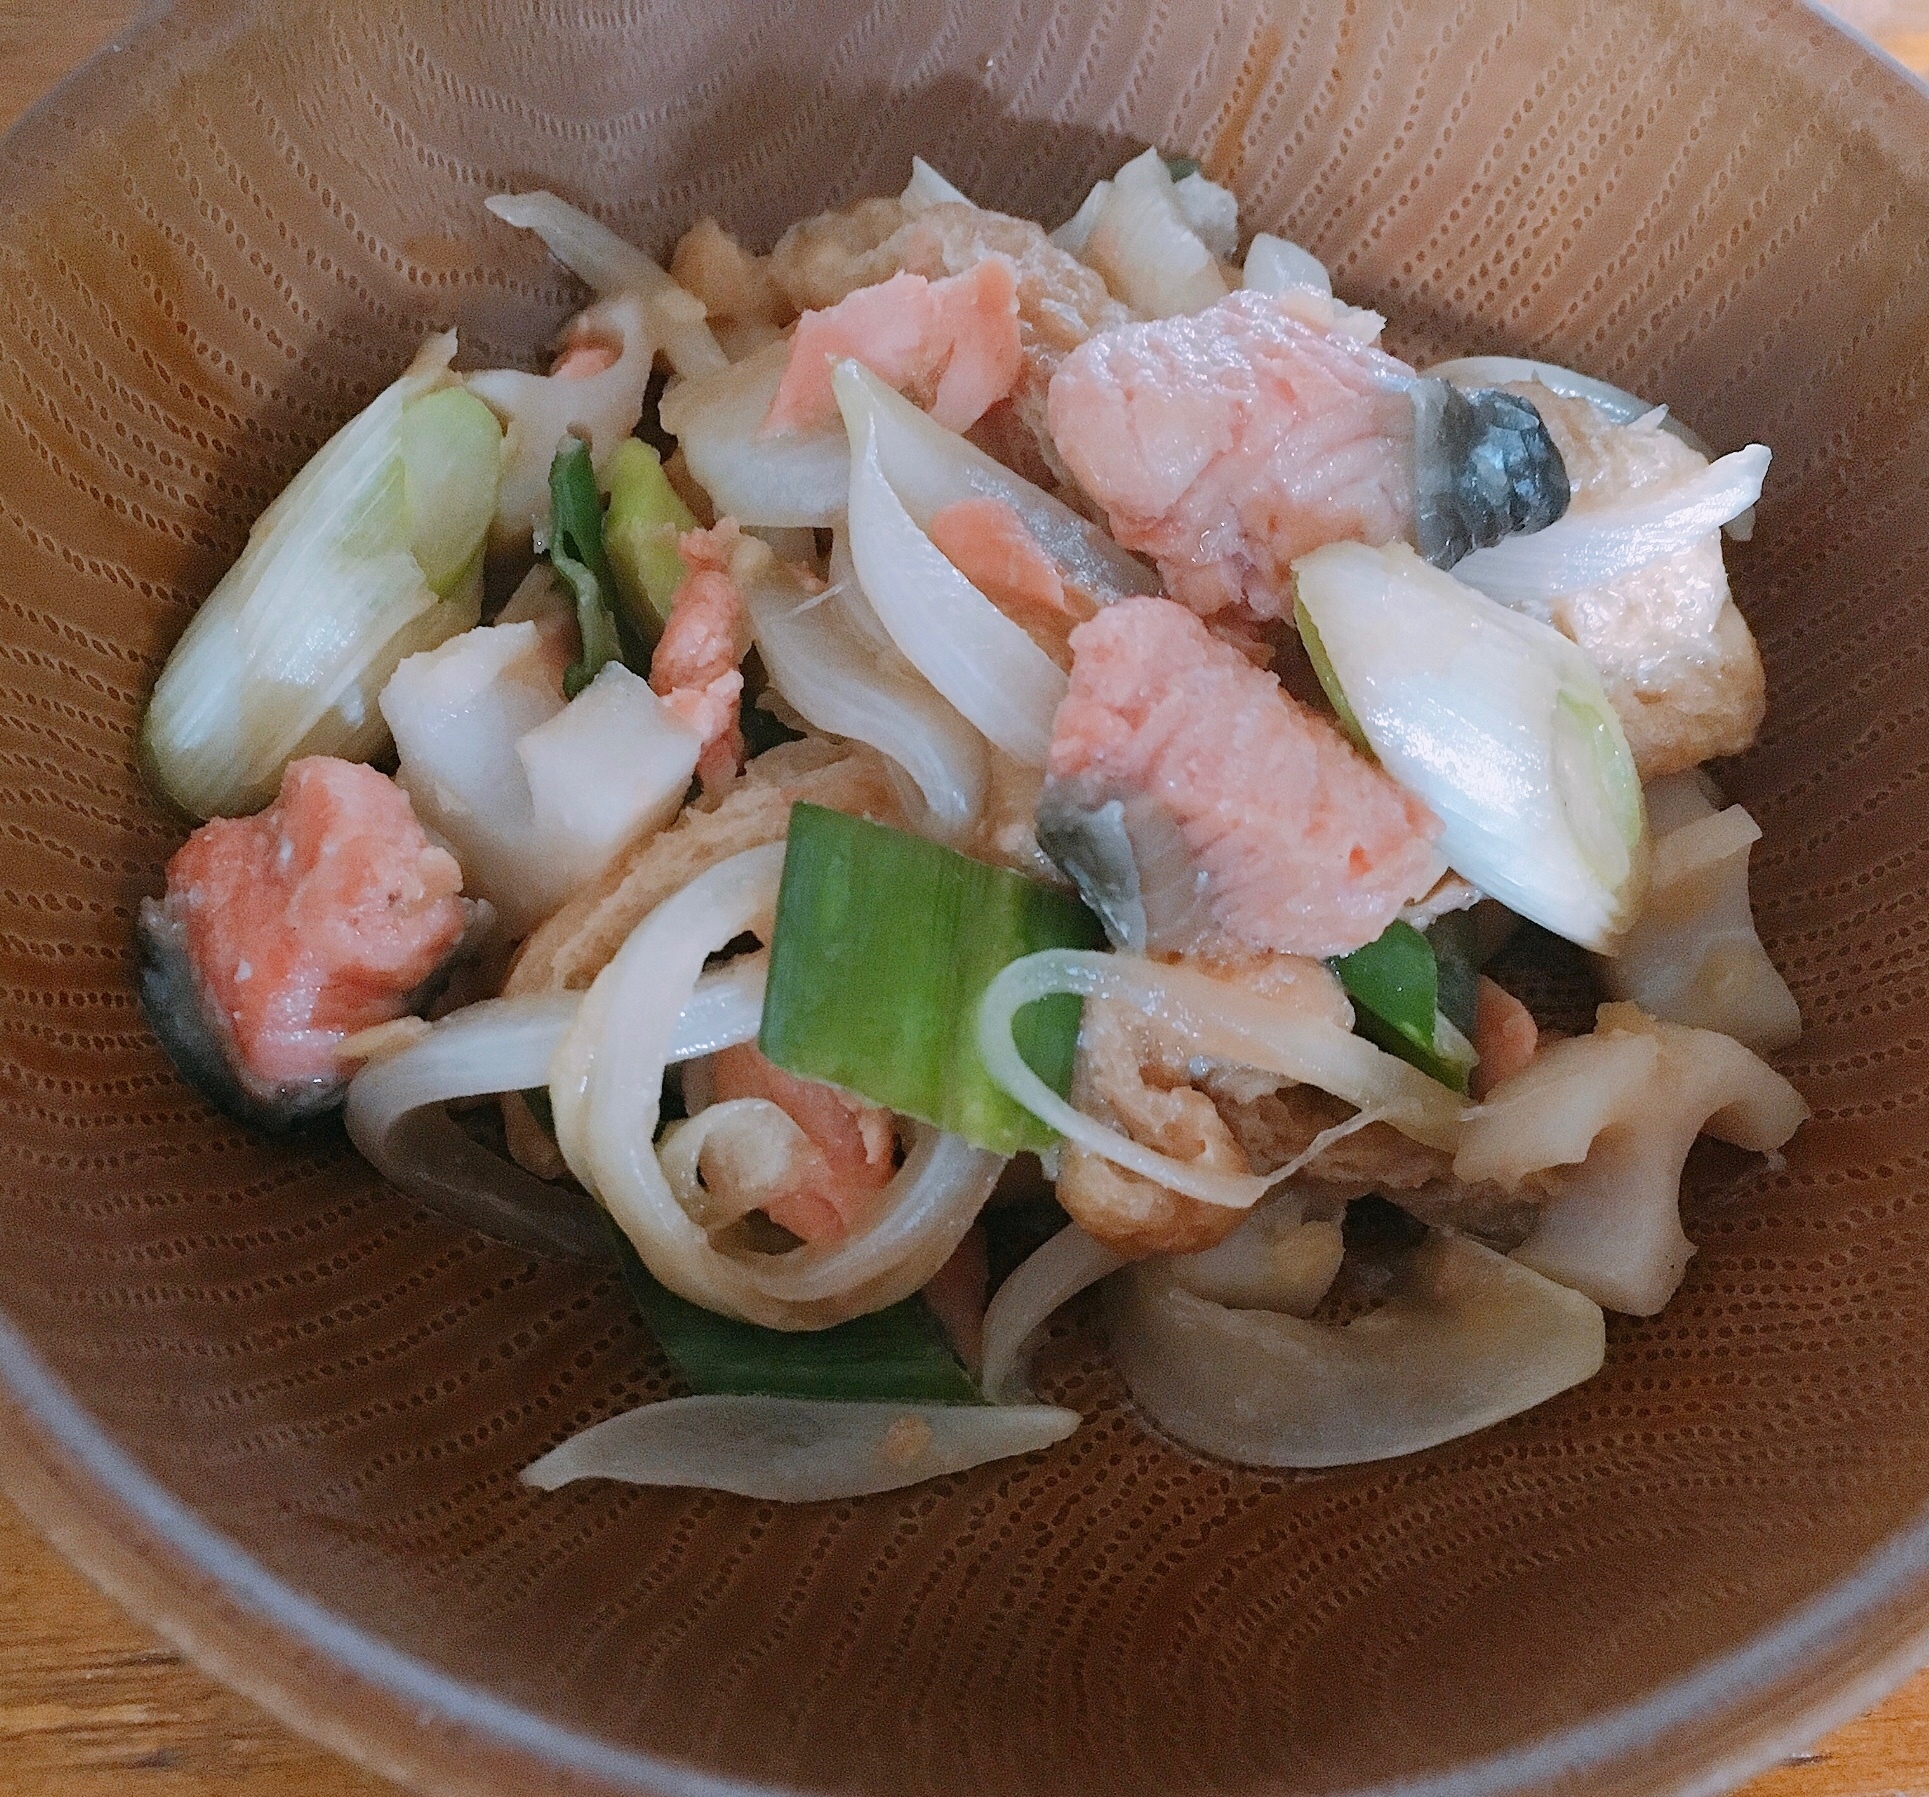 鮭の節約野菜かさまし生姜焼き風炒め